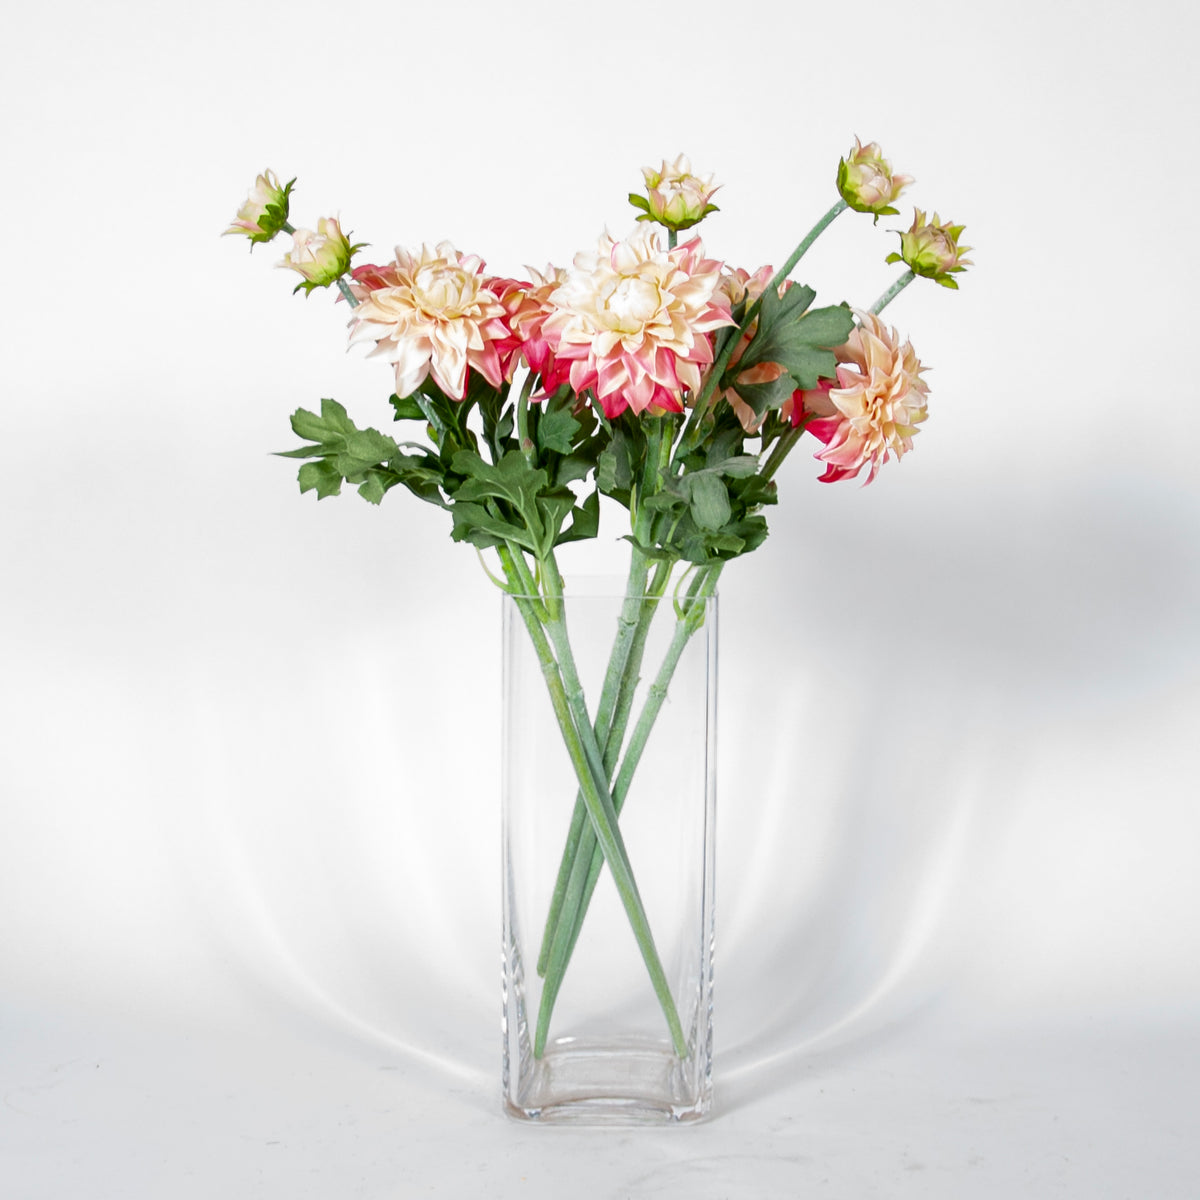 Dahlia Flower - BUBULAND HOME